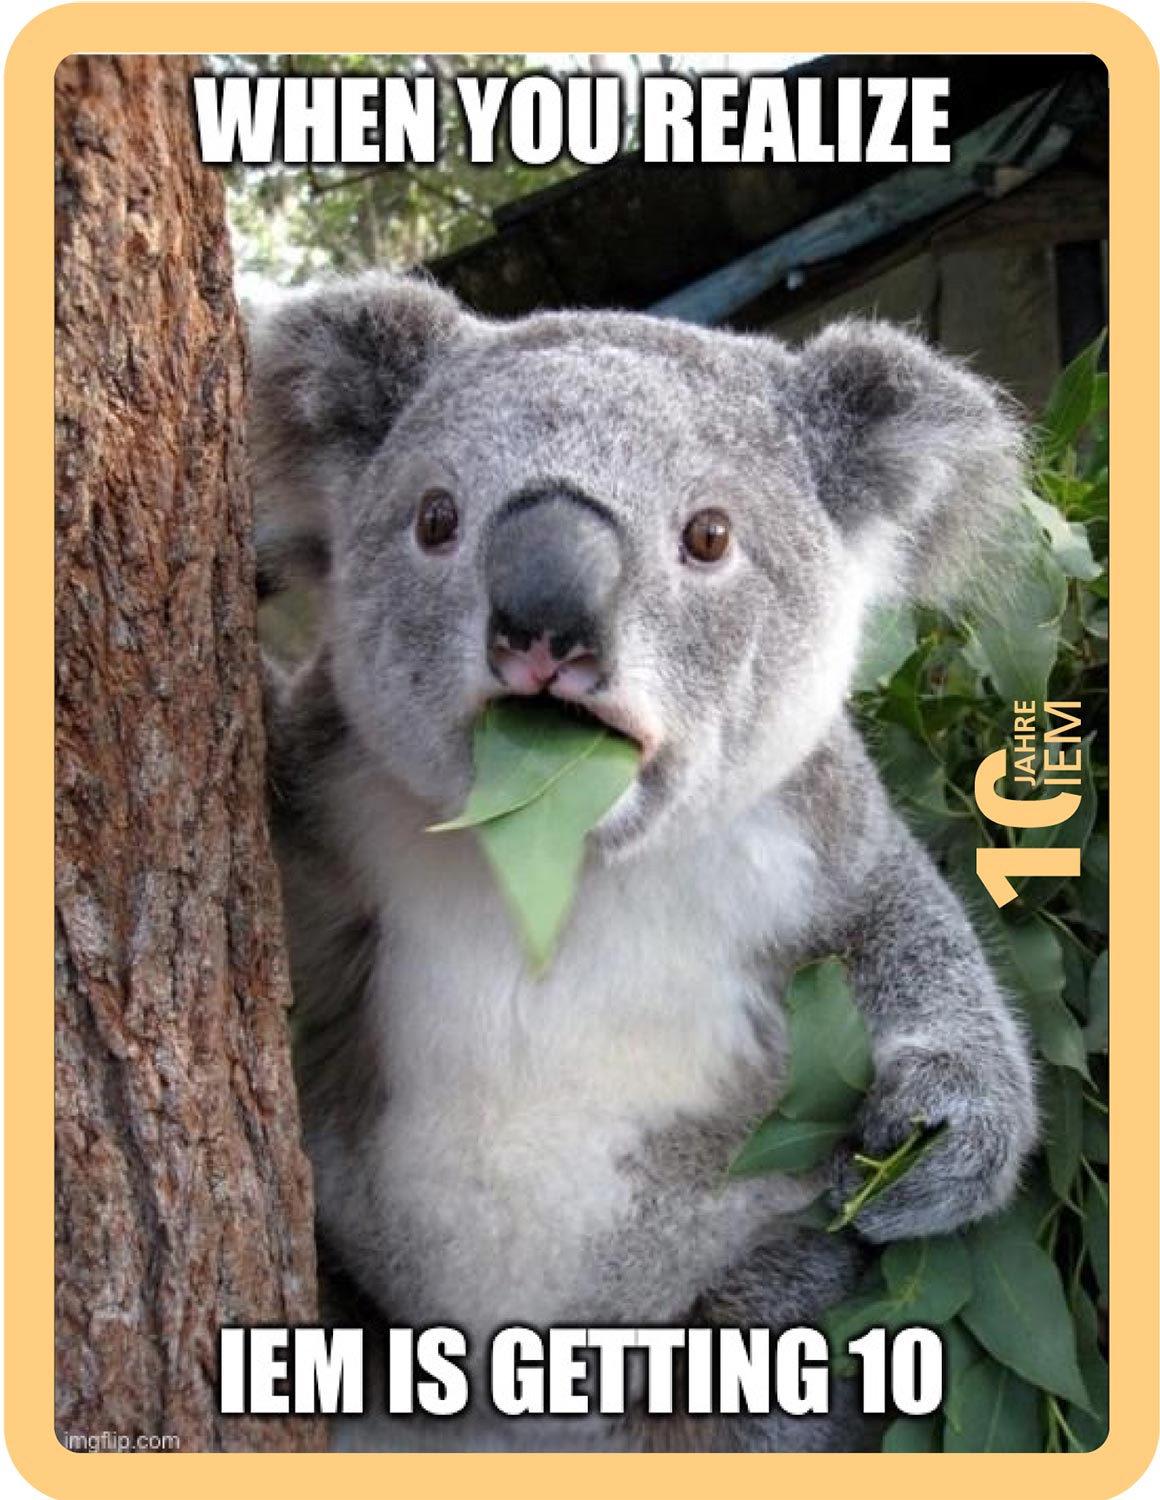 Koala mit Blatt im Mund schaut staunend. Darüber der Schriftzug "When you realize IEM is getting 10".